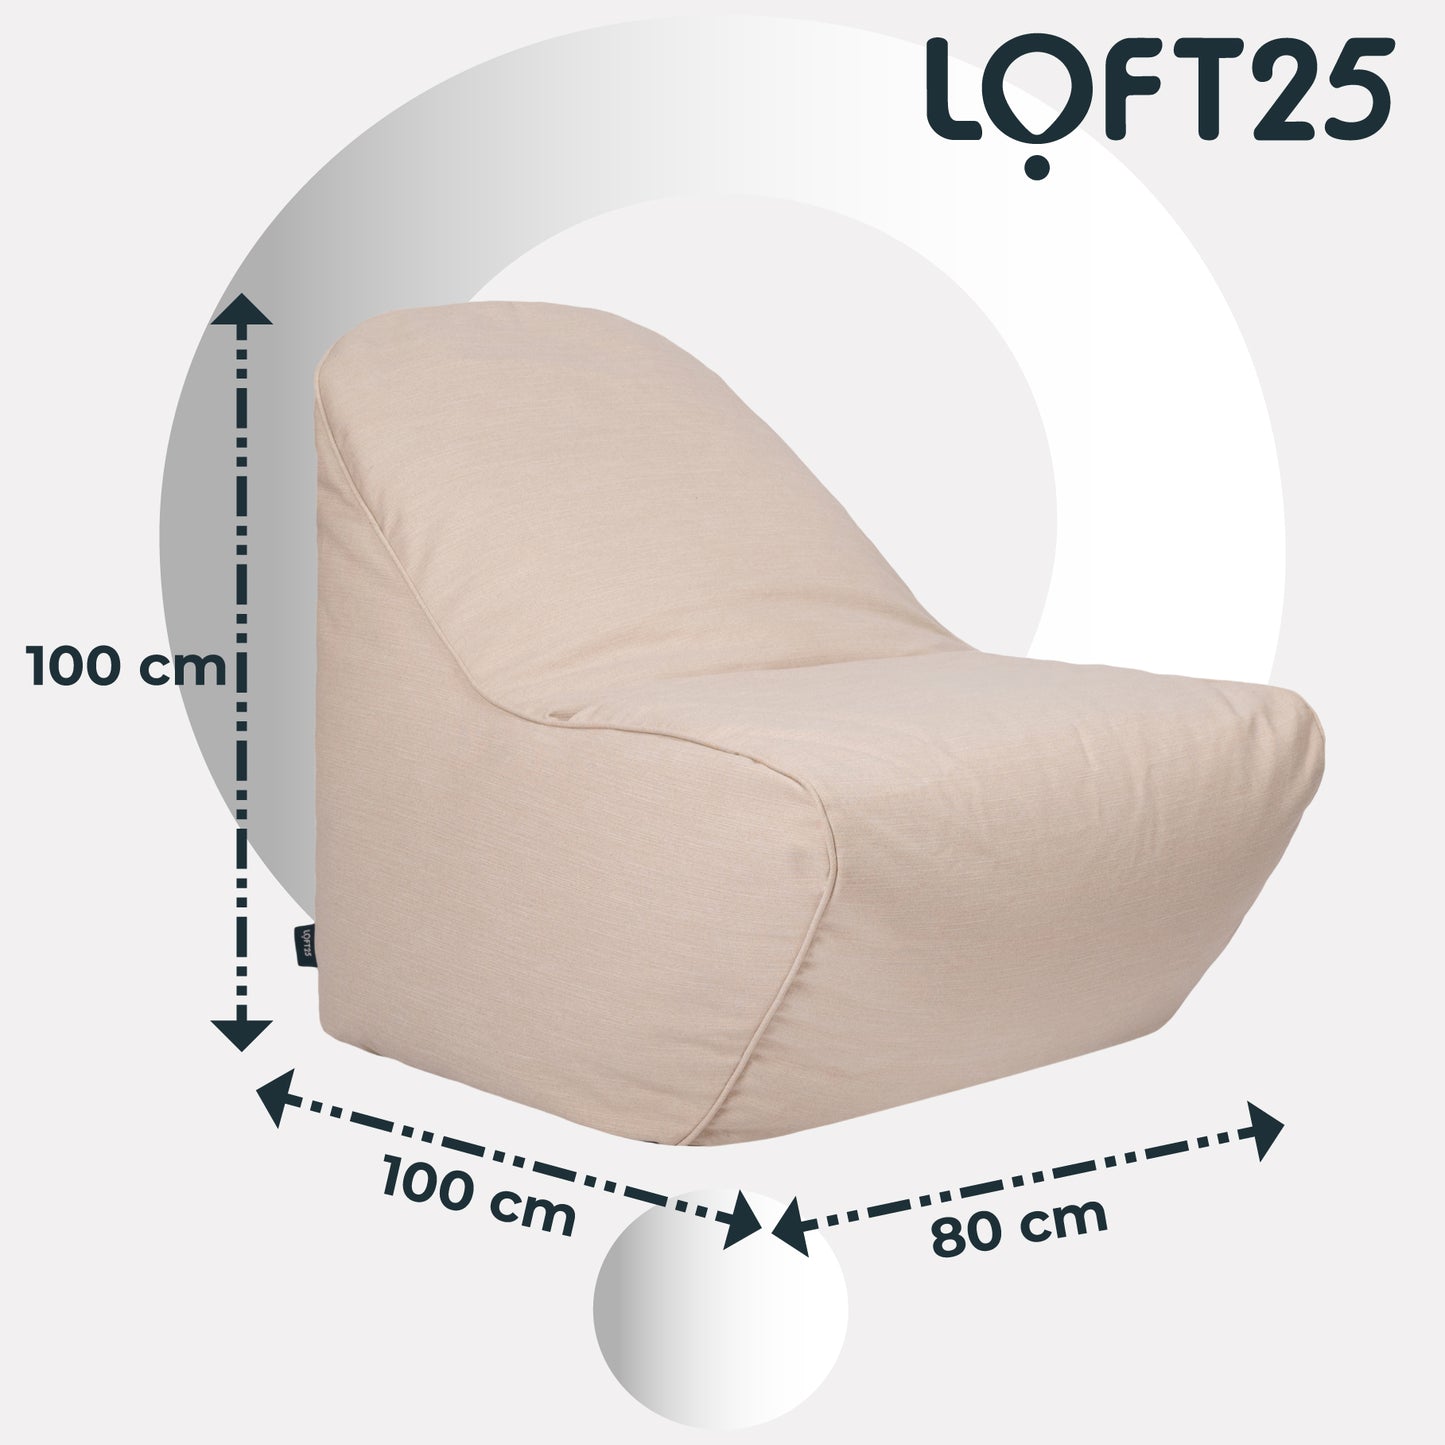 Loft 25 Relaxing Adult Bean Bag Chair 80x100x100